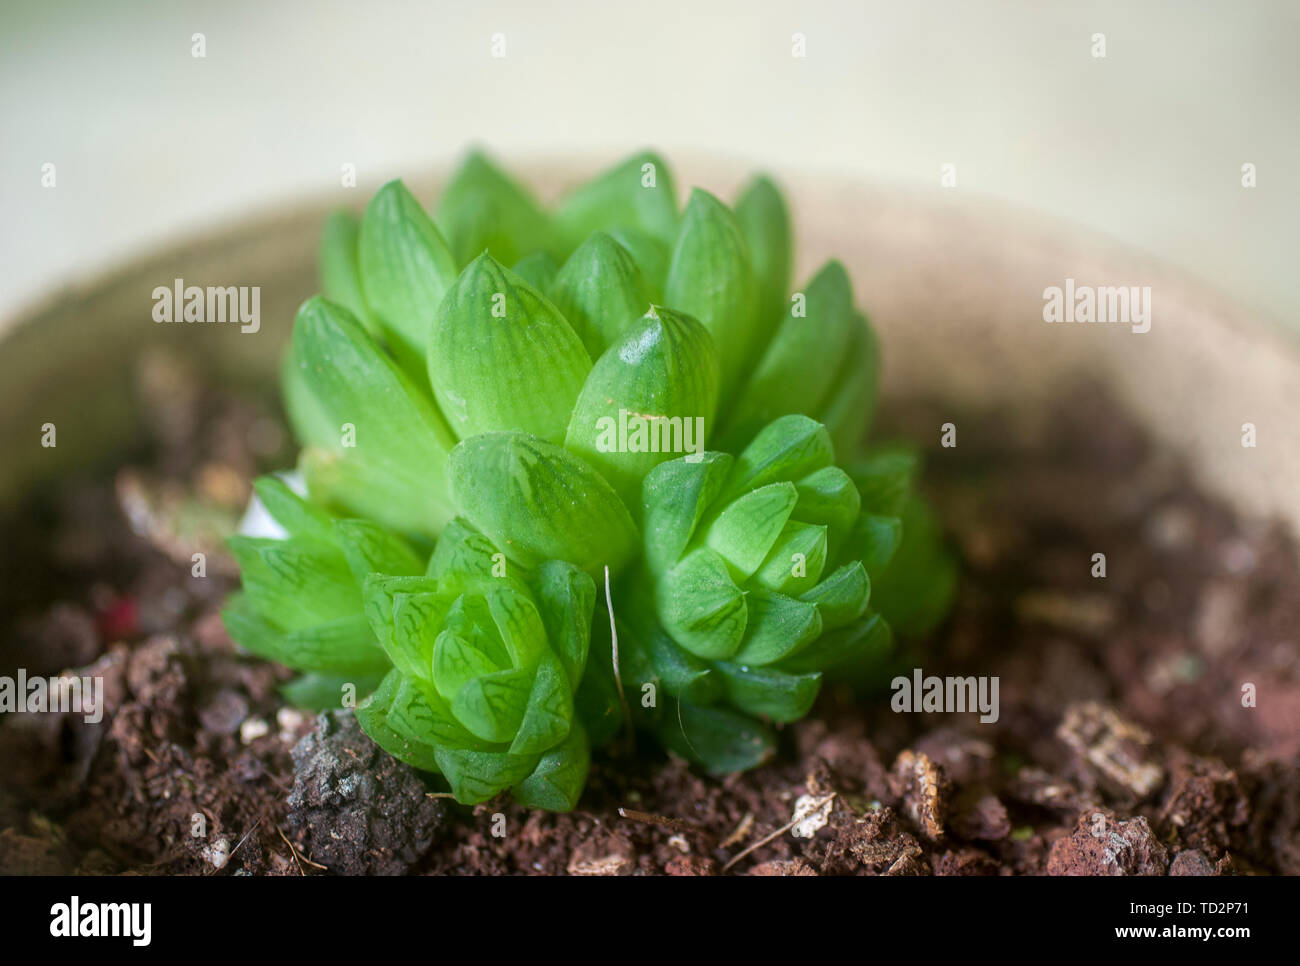 Fenêtre d'Haworthia cuspidata (Star) est une plante succulente formant une rosette, avec star-comme des rosettes, jusqu'à 4 pouces (10 cm) de diamètre. Les feuilles sont lime gr Banque D'Images